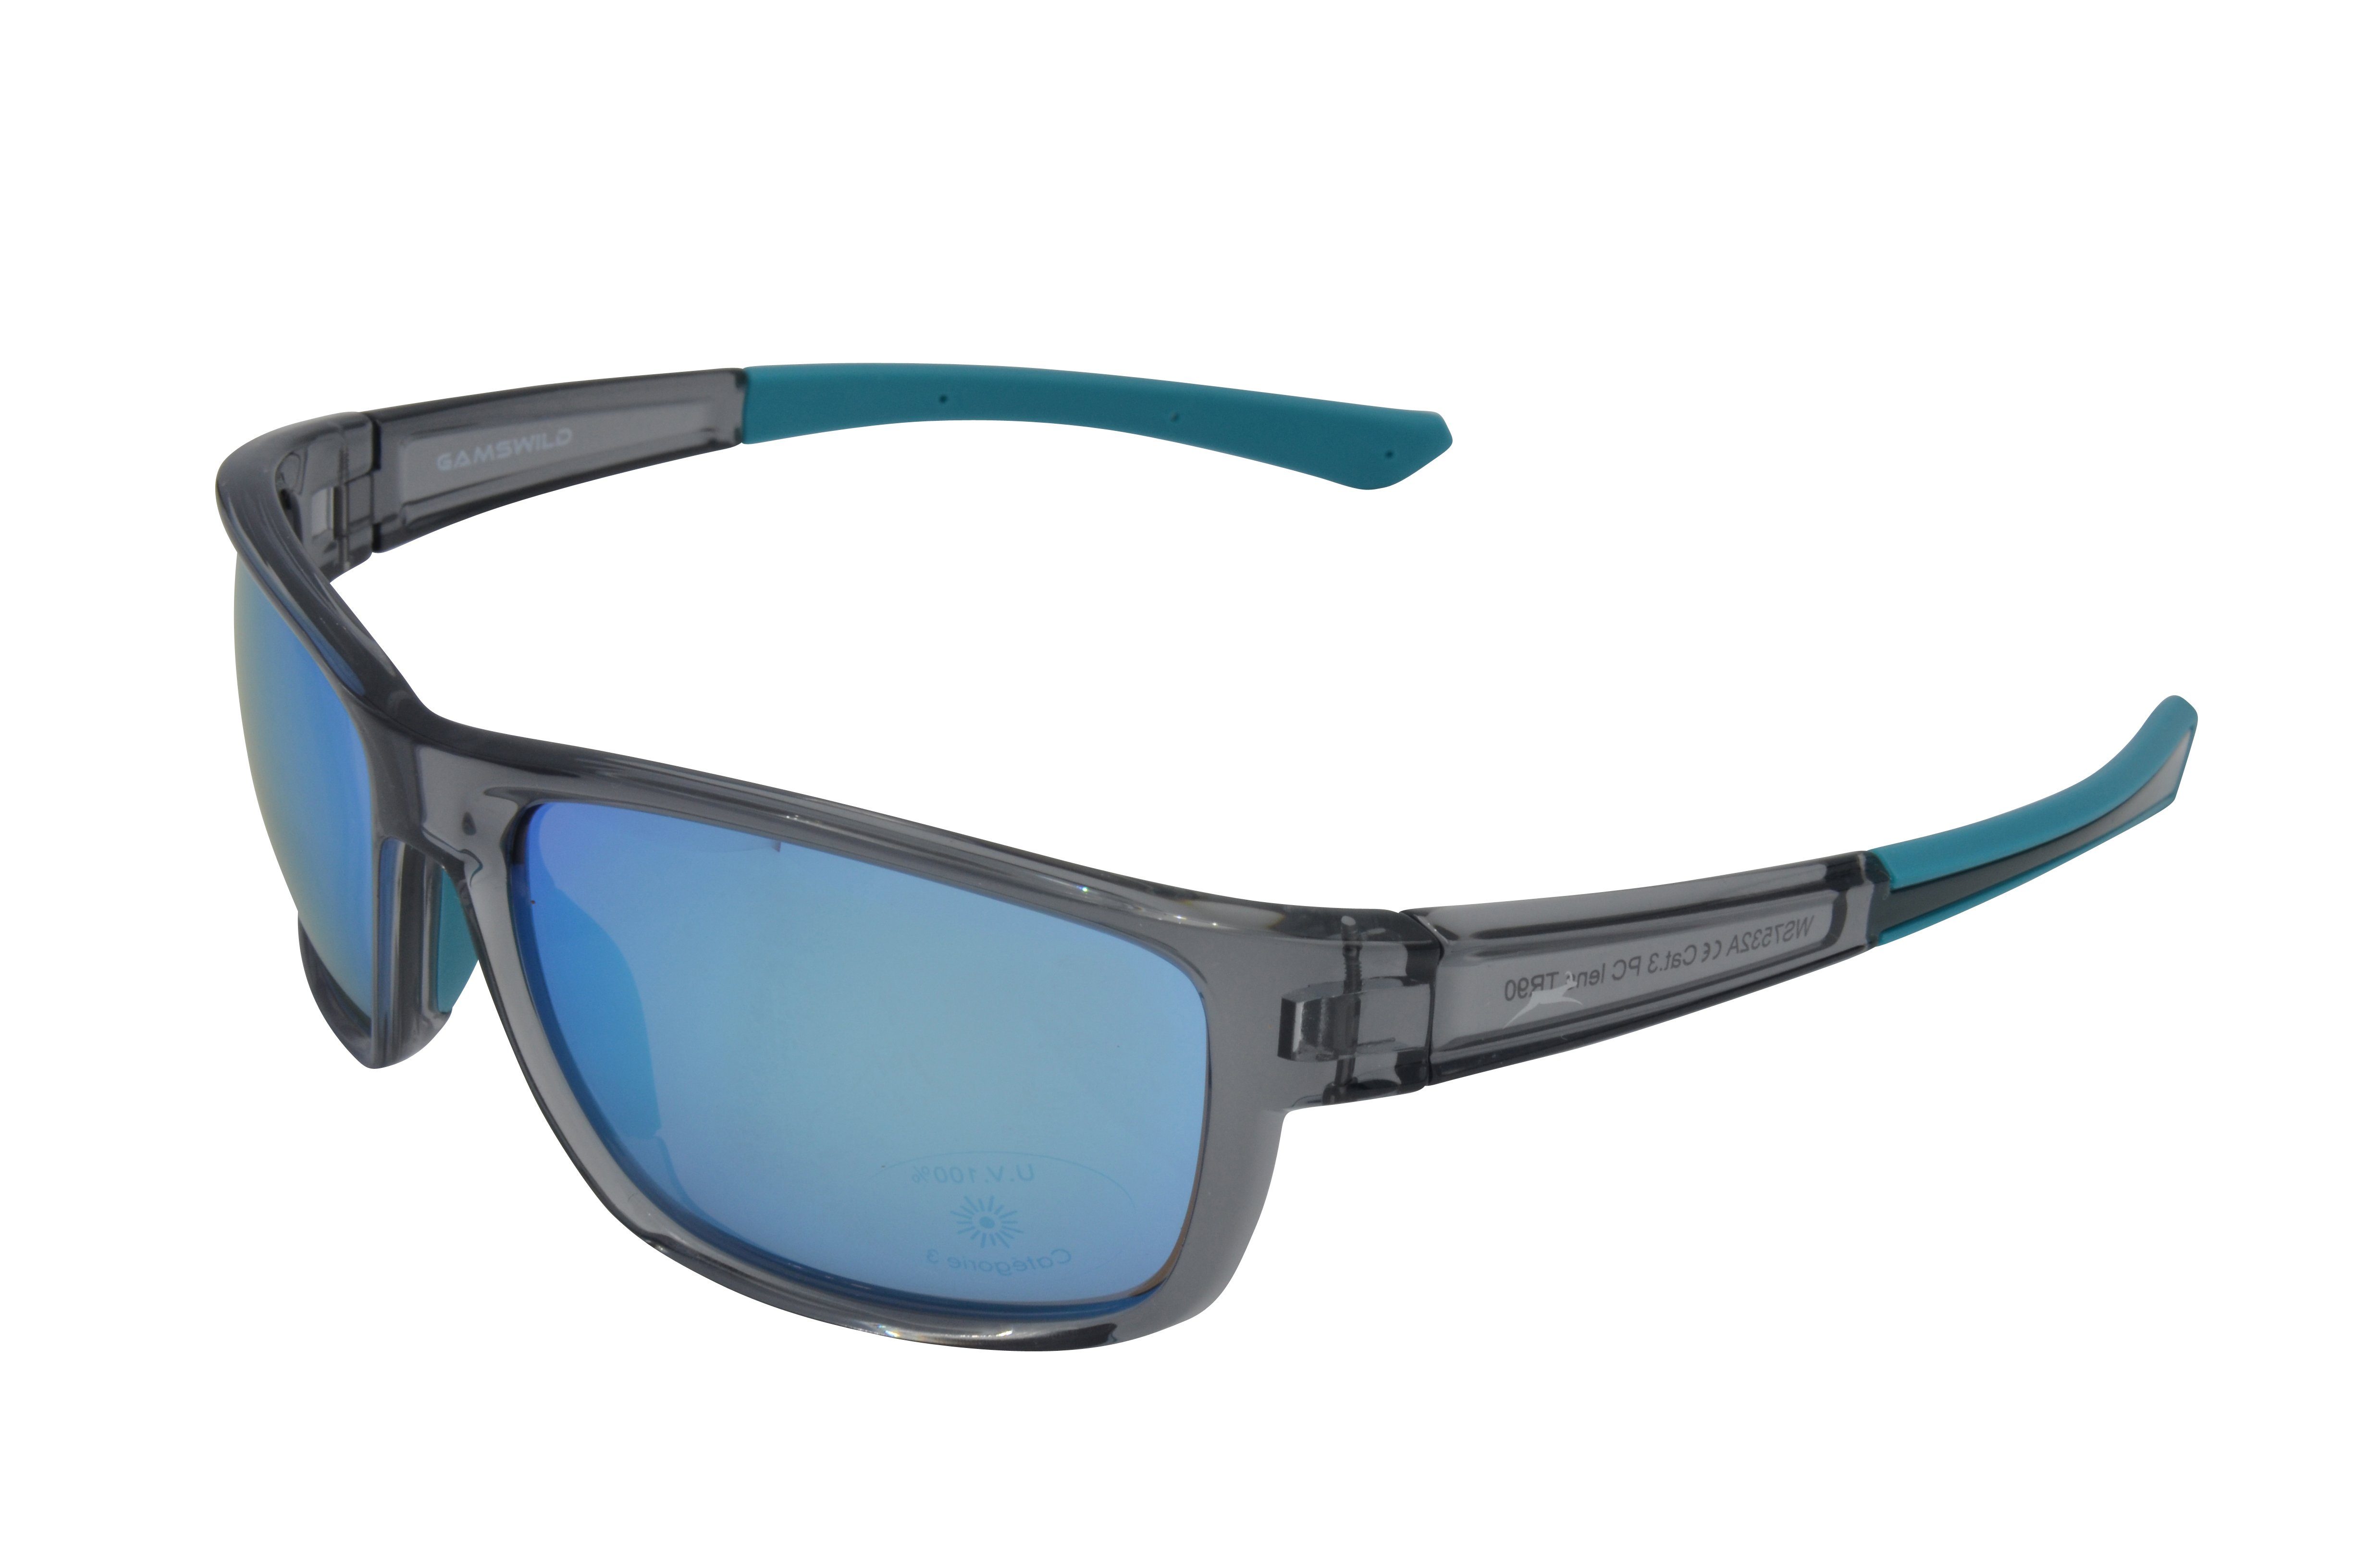 Gamswild Sportbrille WS7532 Sonnenbrille Skibrille Fahrradbrille Damen  Herren Unisex TR90, grau-blau, schwarz-violett, schwarz-gold, schmal  geschnittene Passform